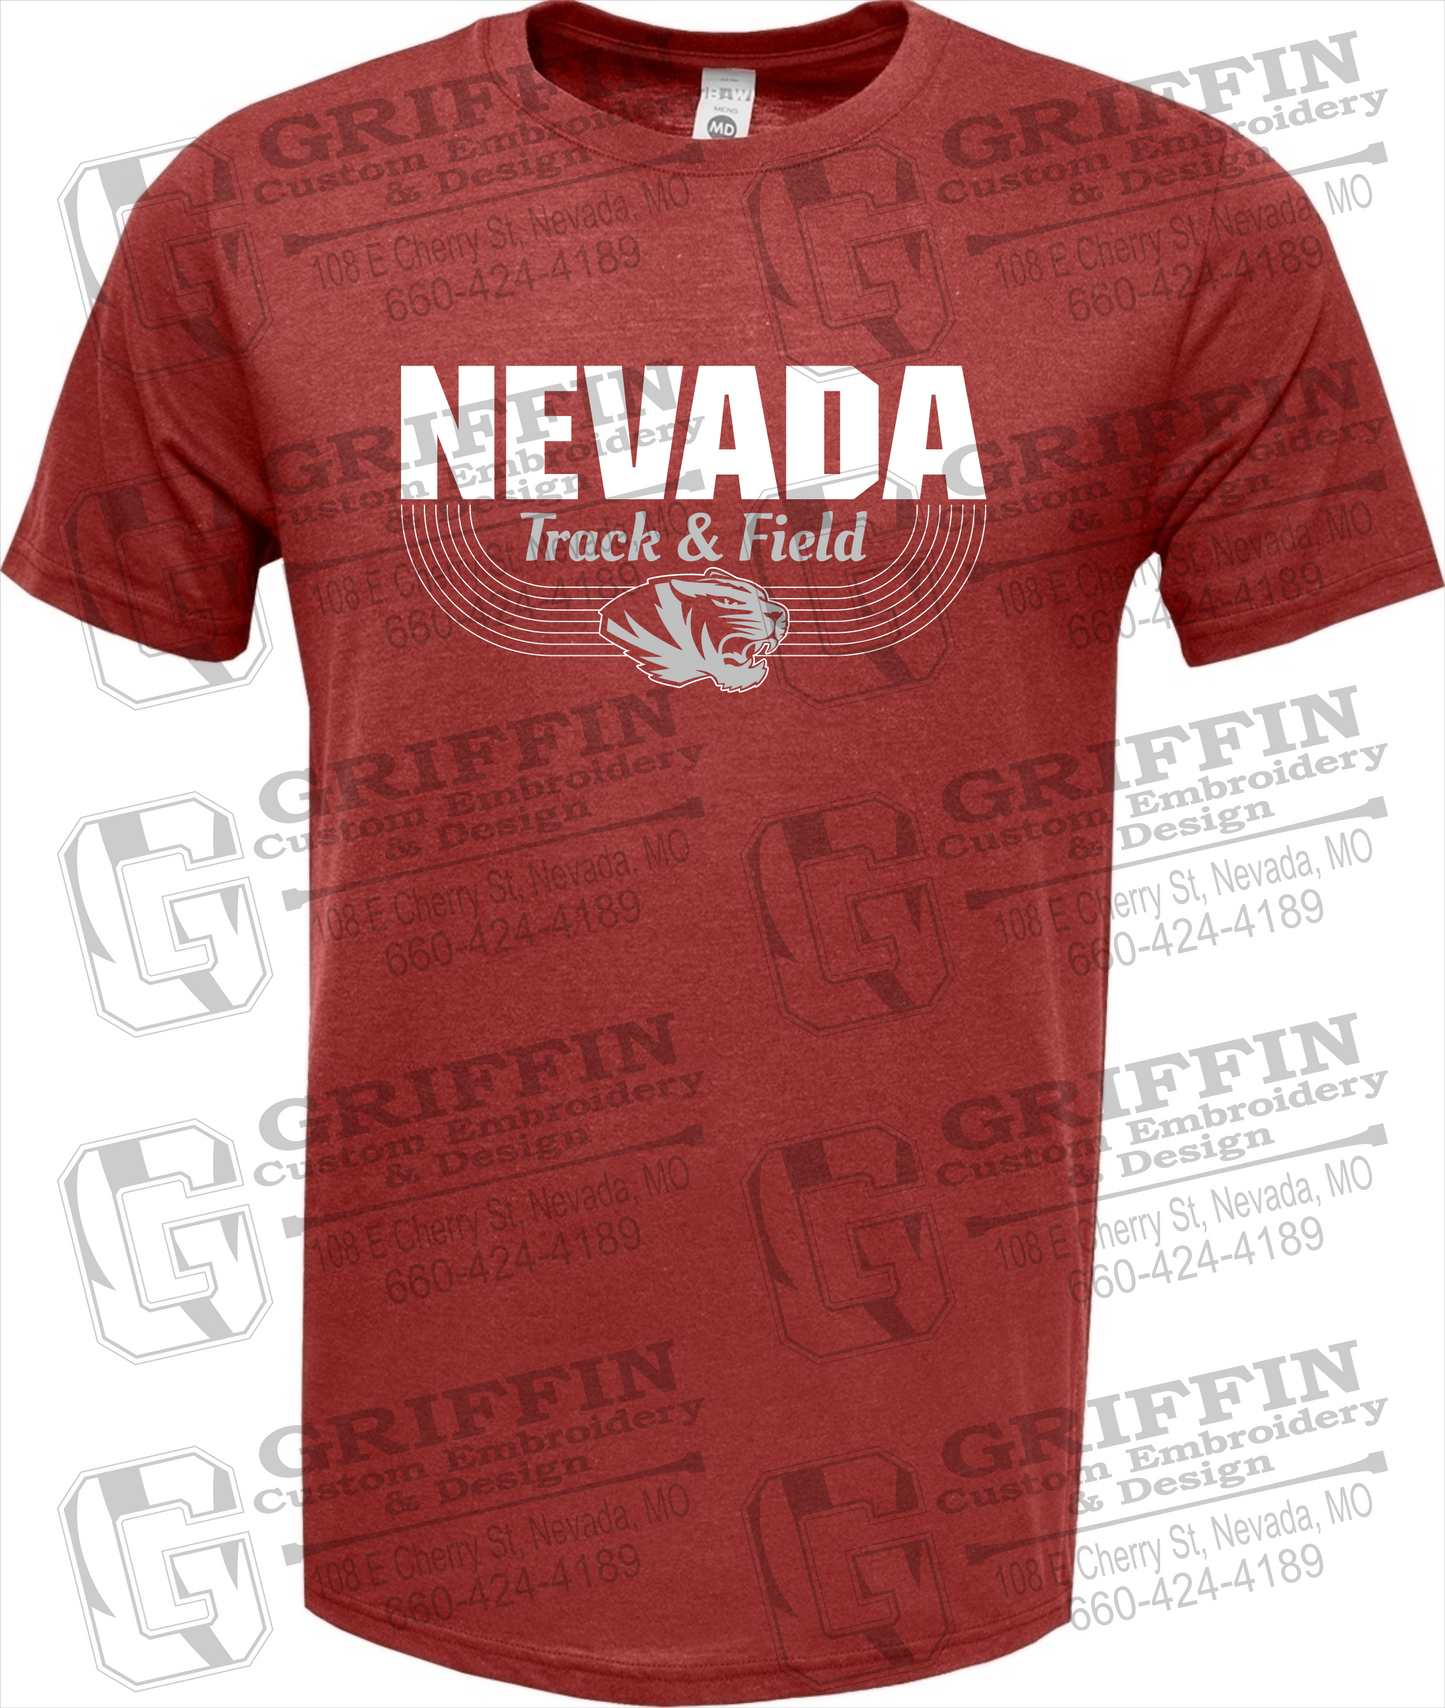 Soft-Tek Short Sleeve T-Shirt - Track & Field - Nevada Tigers 24-R